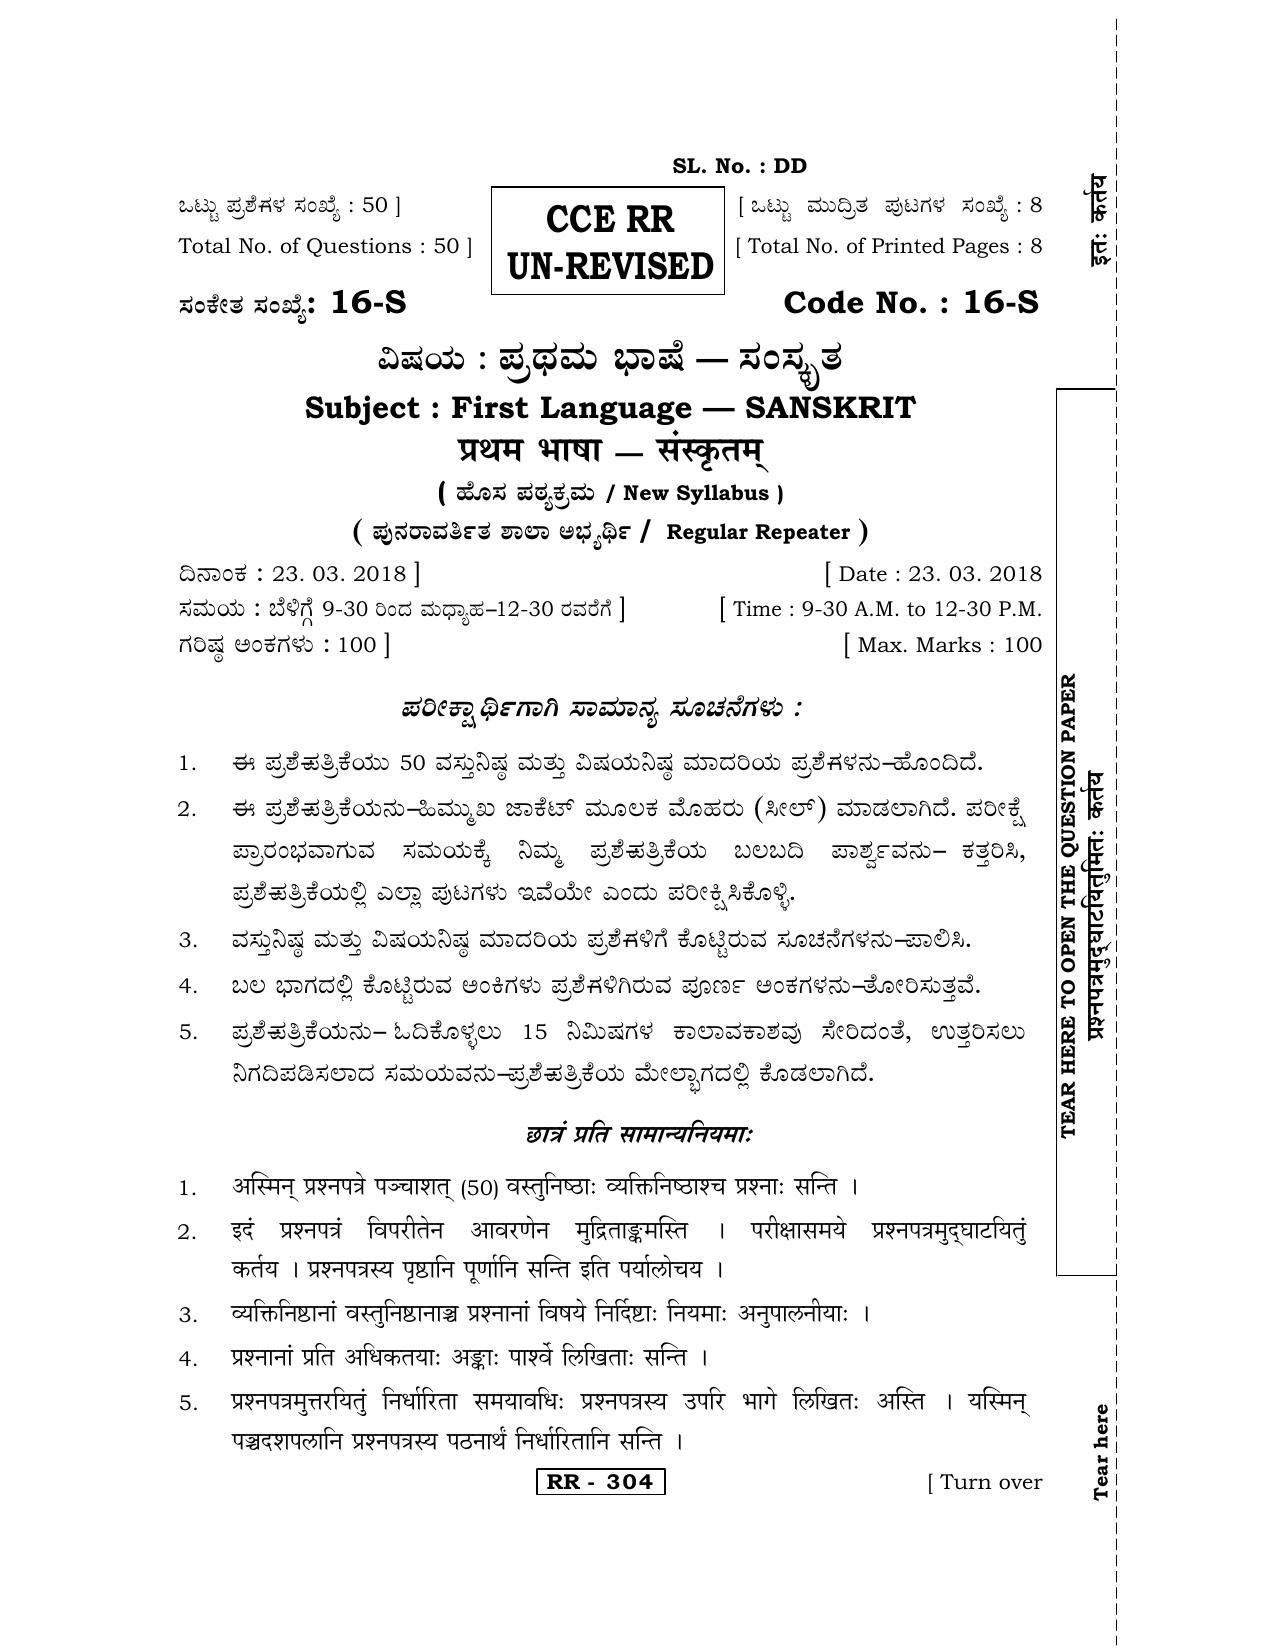 Karnataka SSLC Sanskrit - First Language - SANSKRIT (16-S-CCE RR UNREVISED_17) April 2018 Question Paper - Page 1